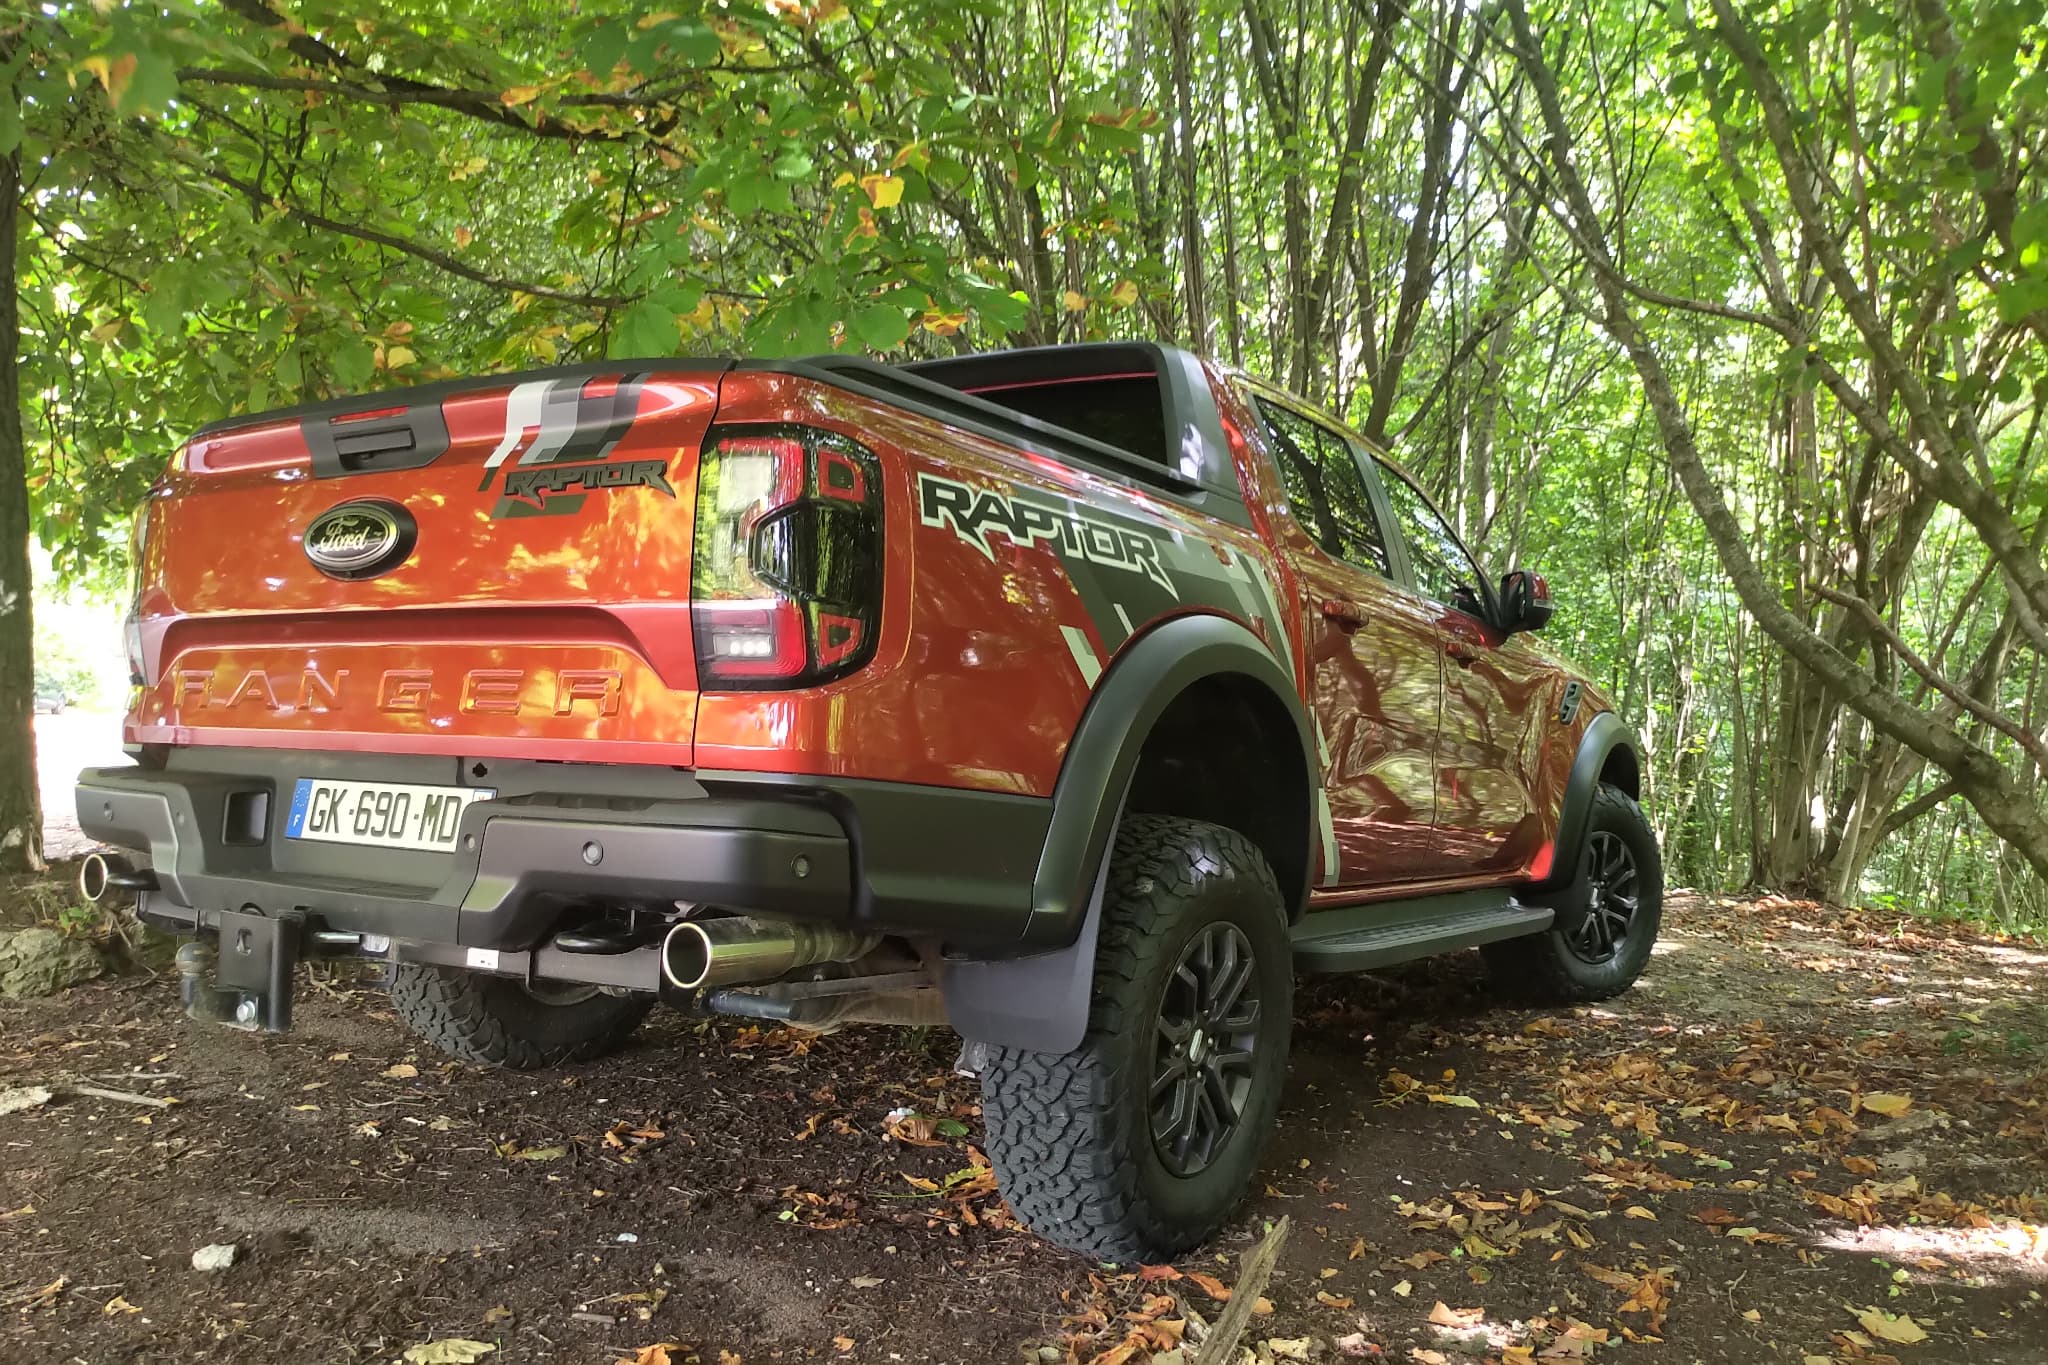 Essai - Ford Ranger Raptor, un pick-up sans complexe et sans malus